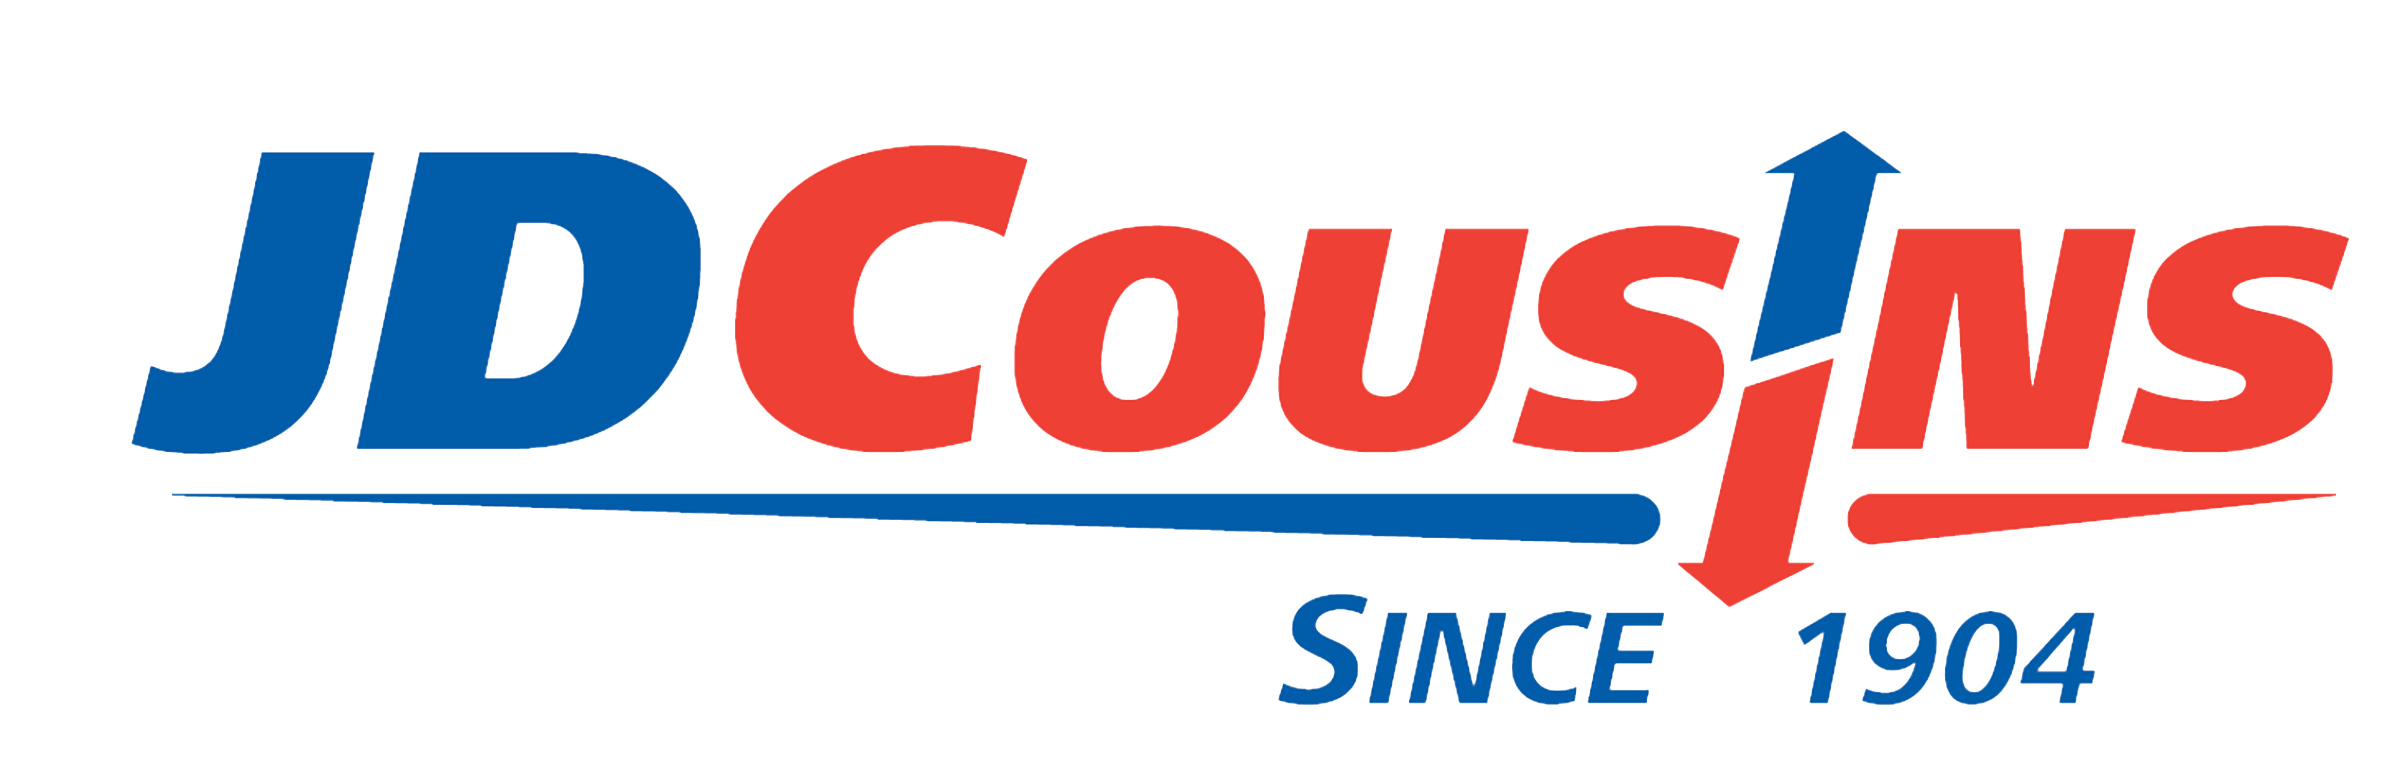 J.D. Cousins, Inc